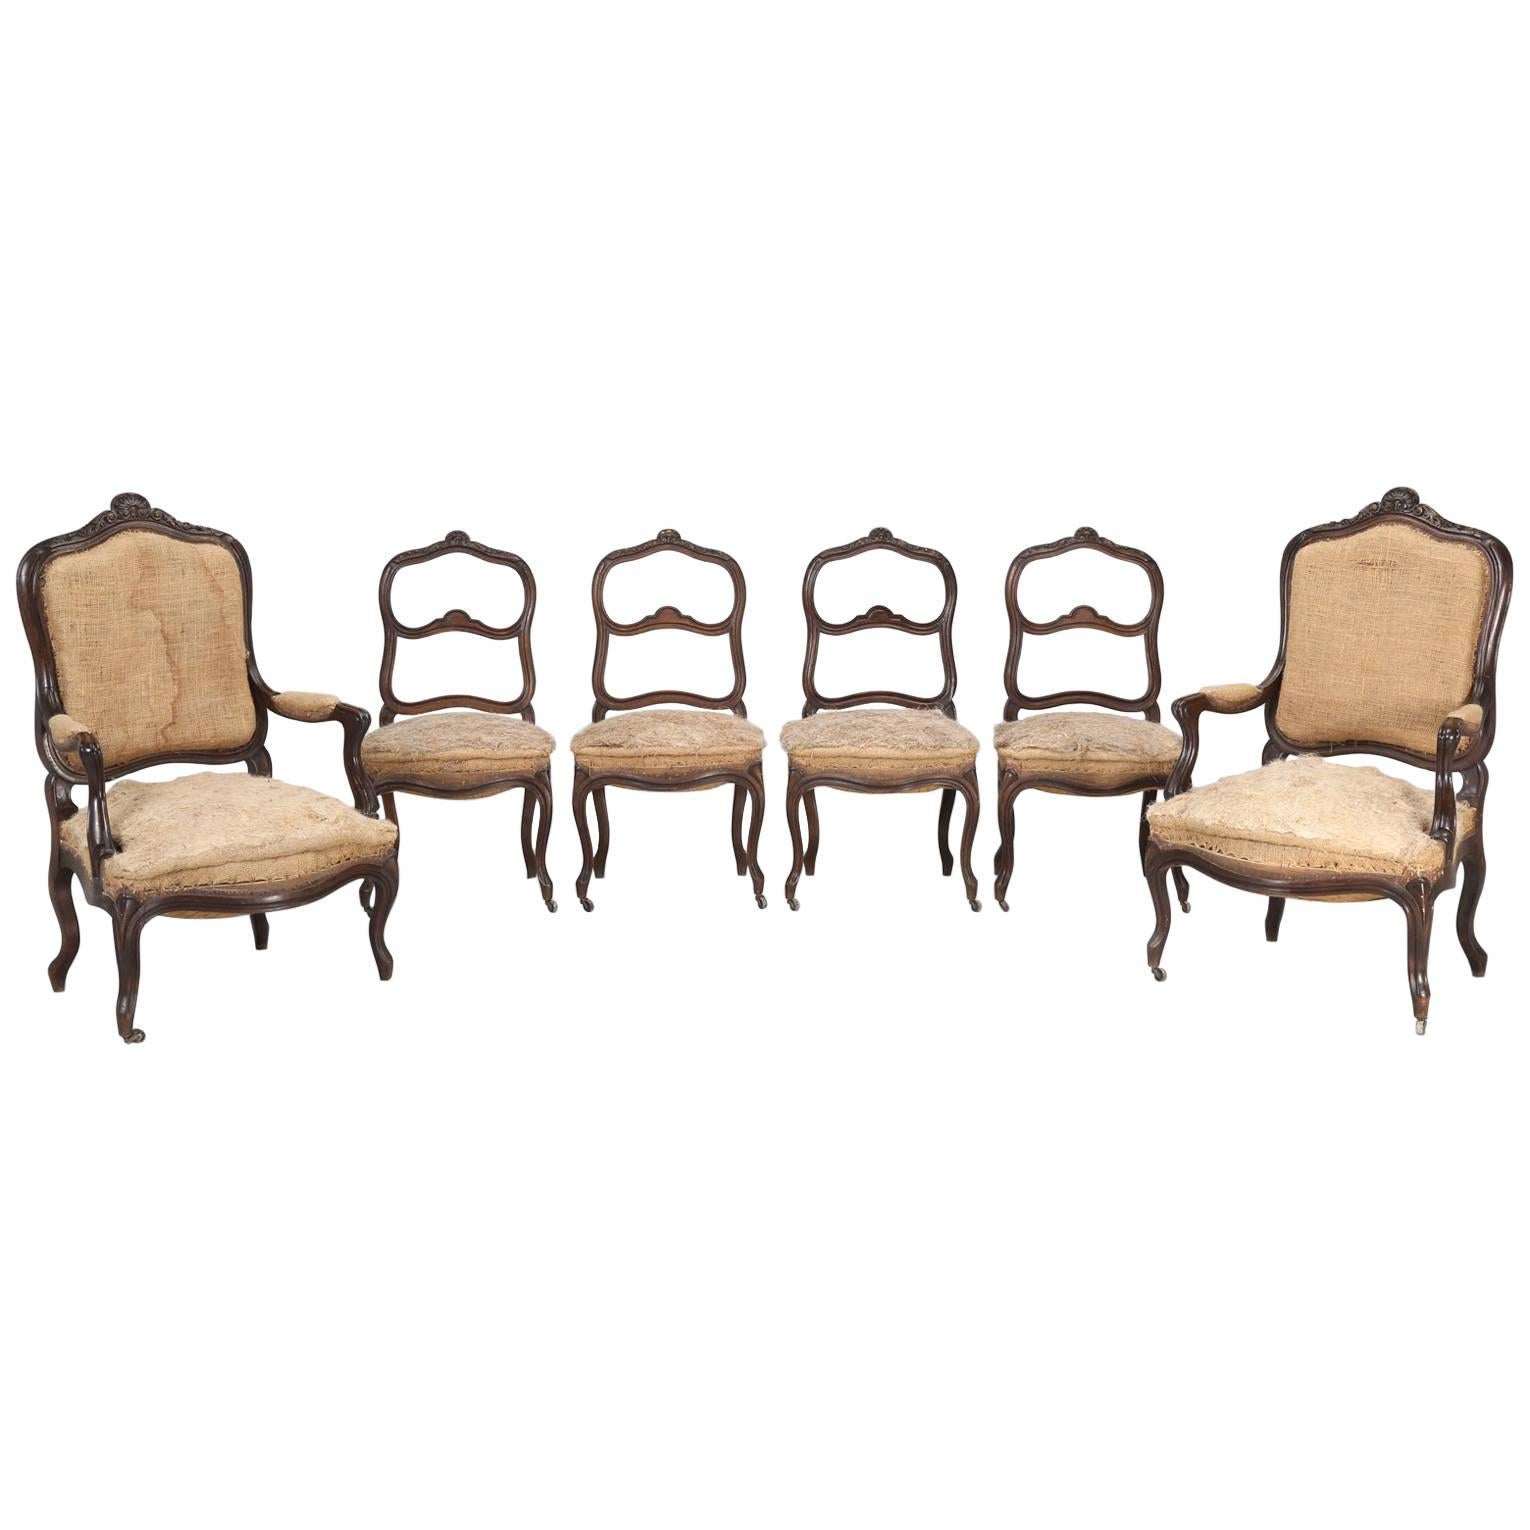 Ensemble de six chaises de salon ou de salon anciennes françaises sculptées